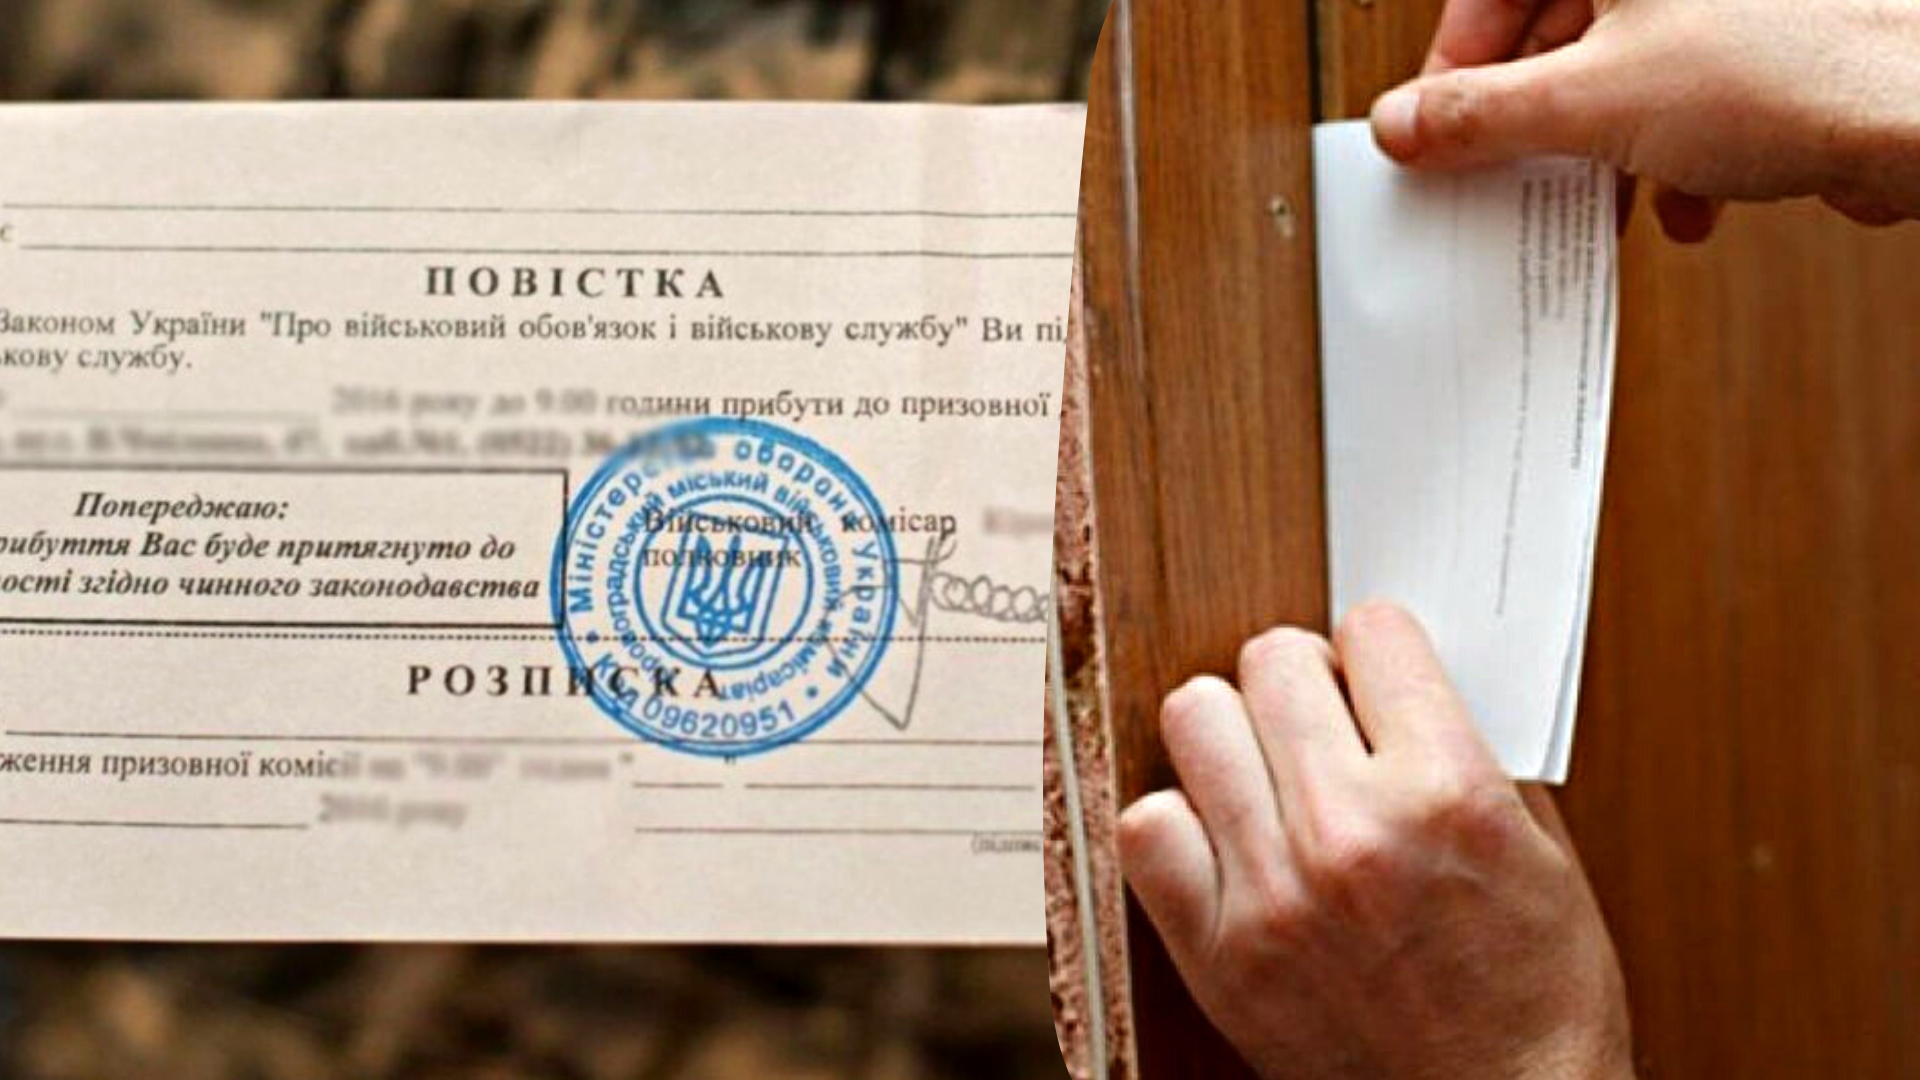 Українським законодавством чітко визначена форма повістки військовозобов'язаним, а також хто і як їх може вручати.

